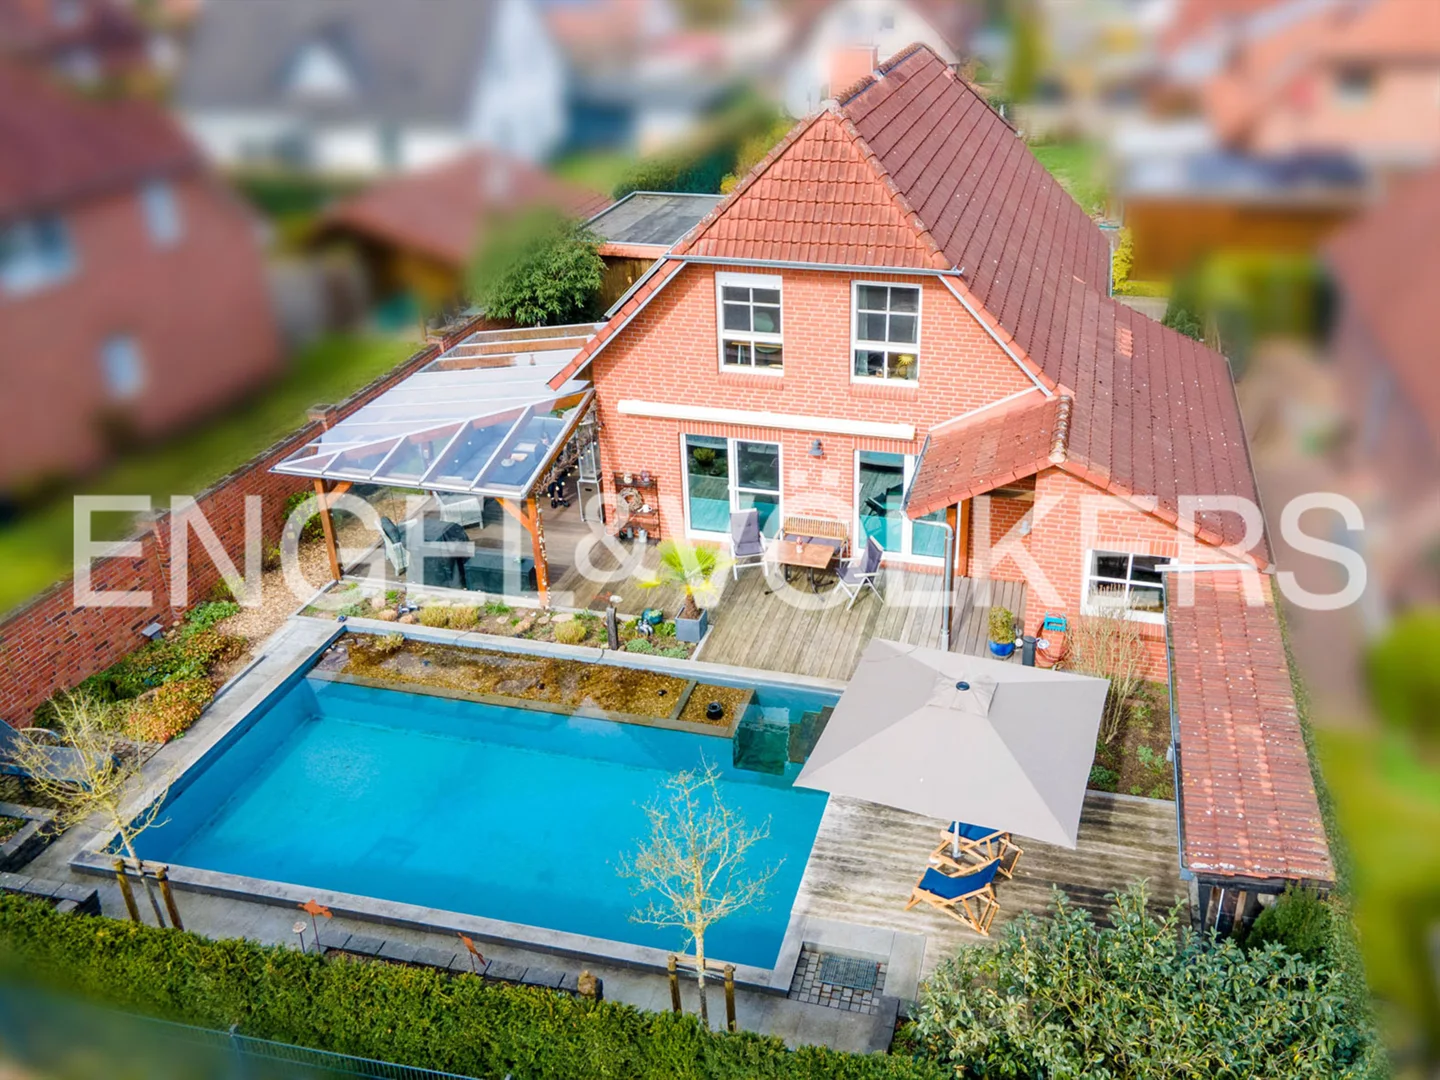 Exklusives Einfamilienhaus mit Pool und Wellness-Oase in ruhiger Lage von Kirchlinteln